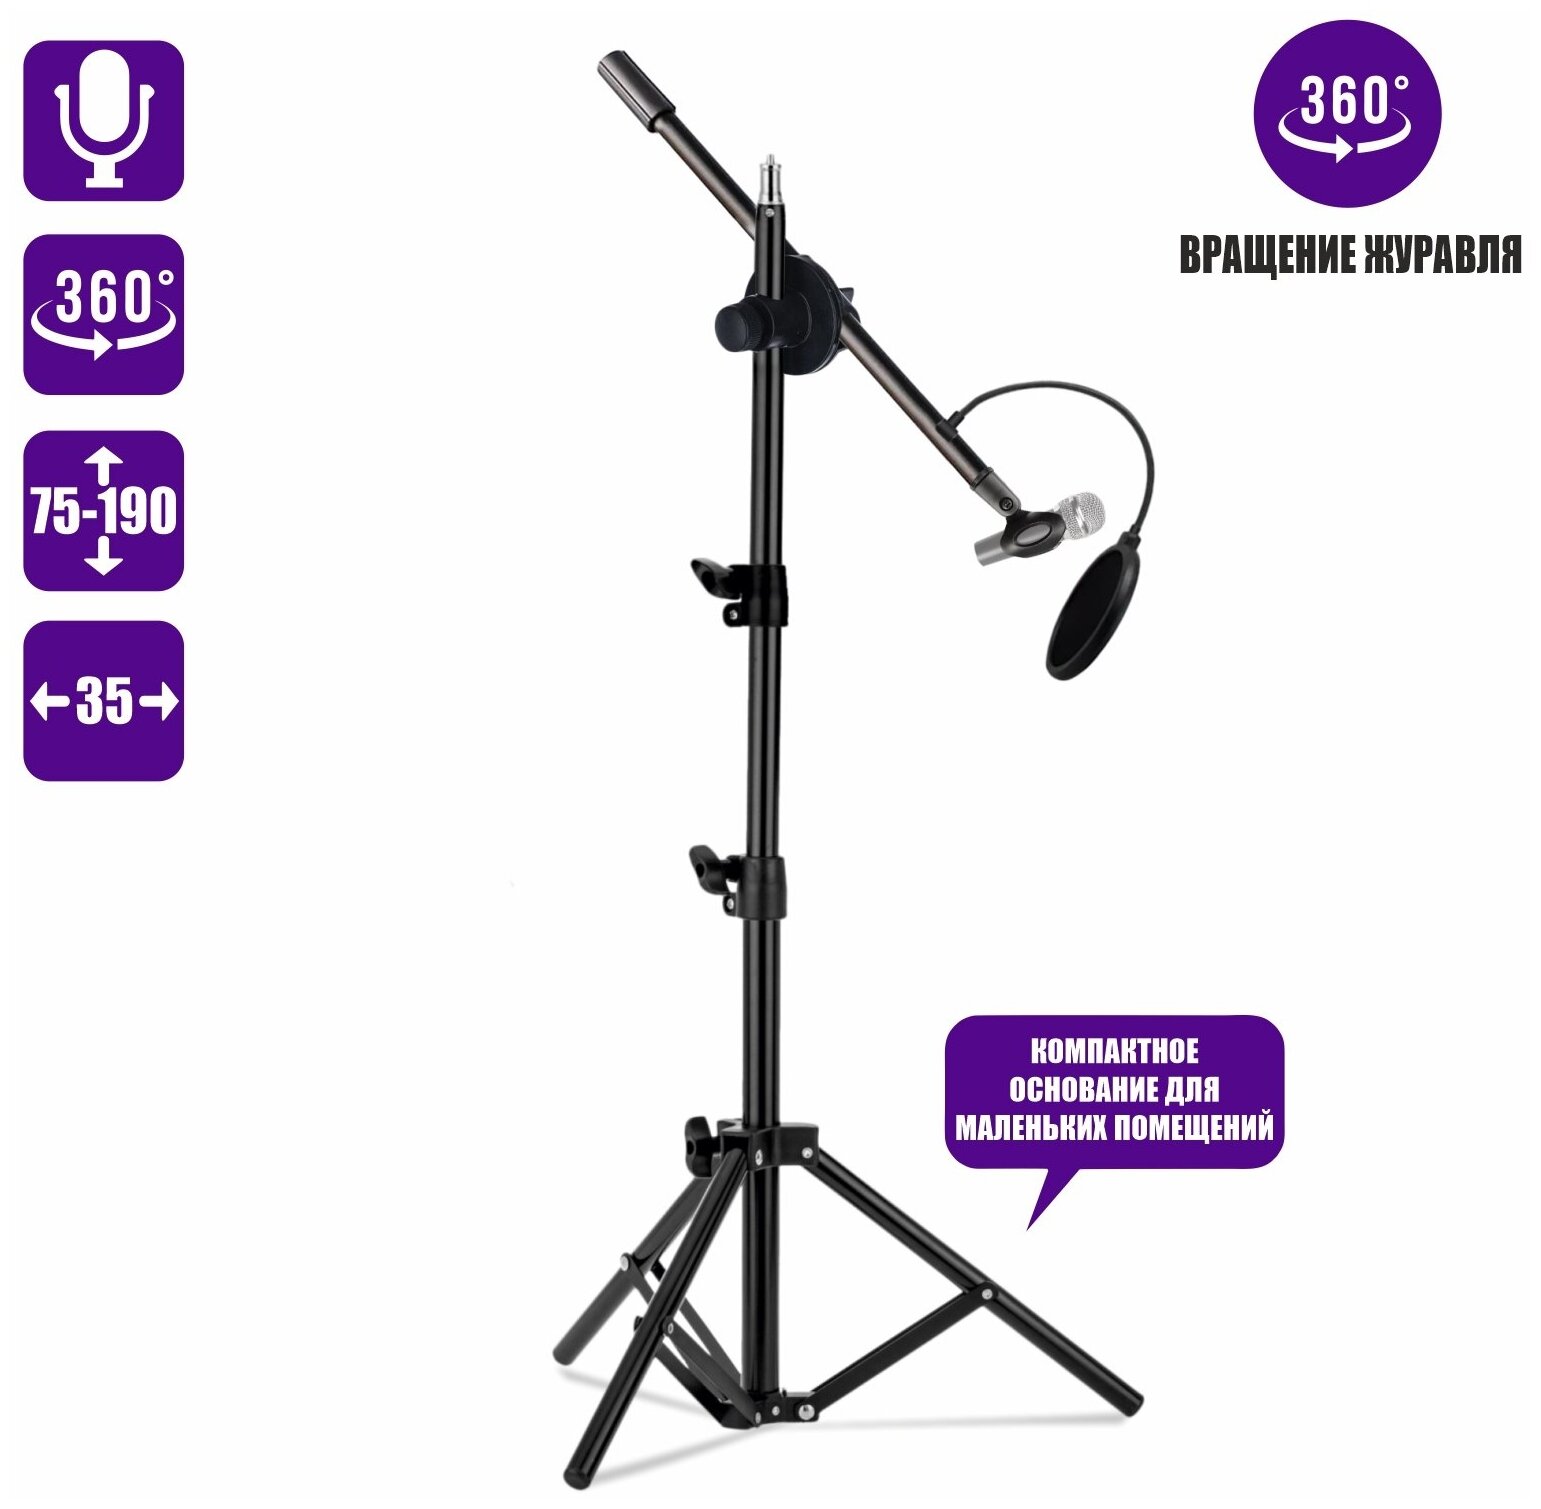 Напольная стойка для микрофона журавль MCPro-35P с поп-фильтром диаметром 15.5см